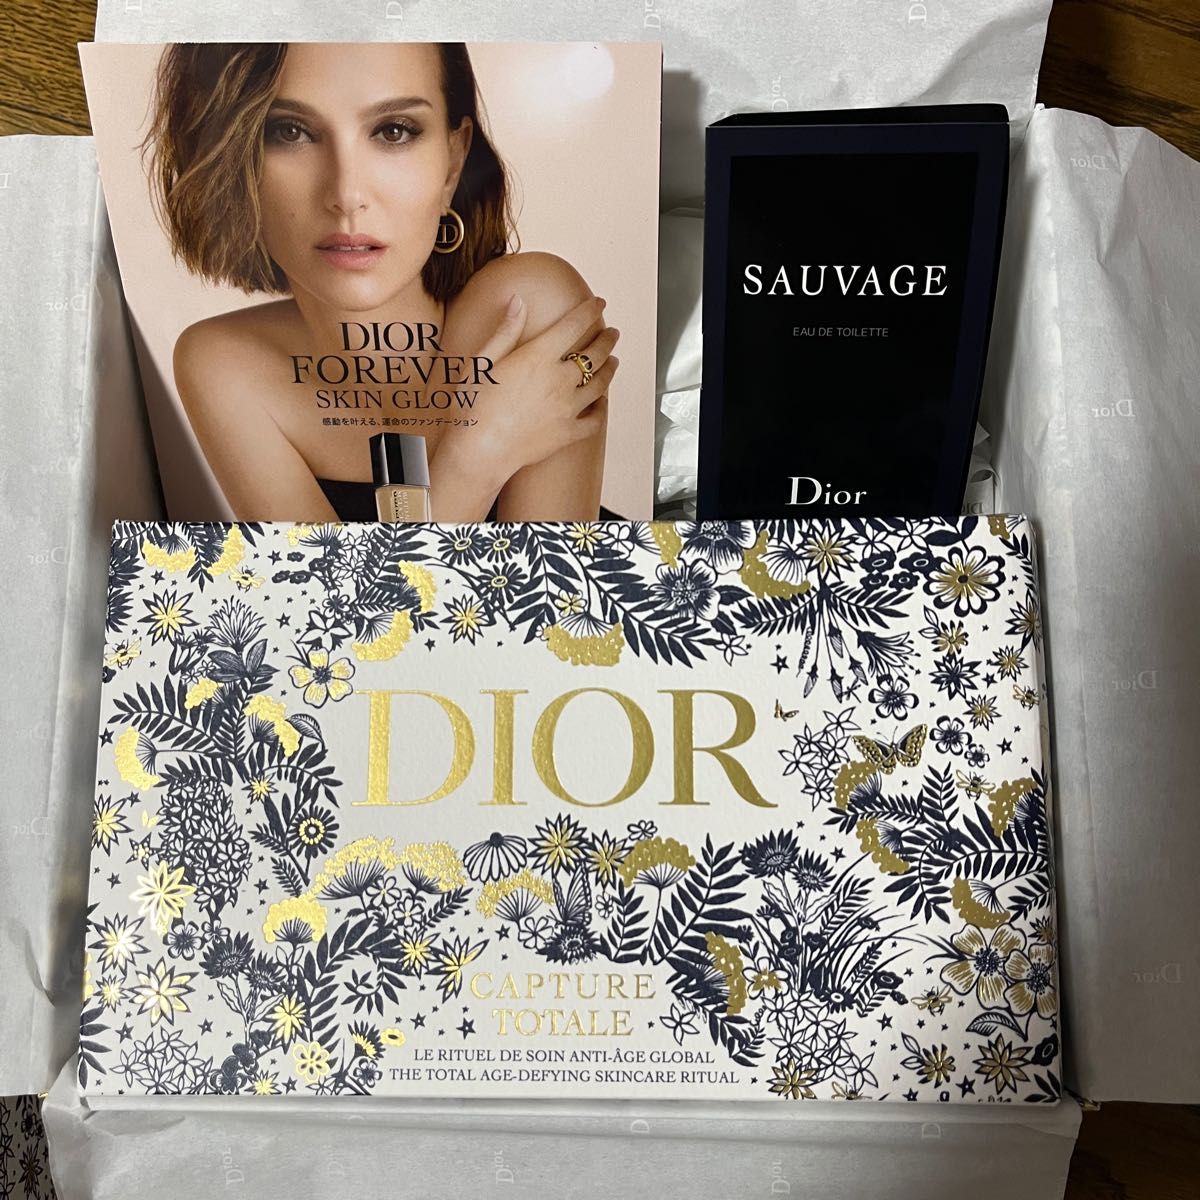 Dior｢カプチュールトータルホリデー+おまけ｣